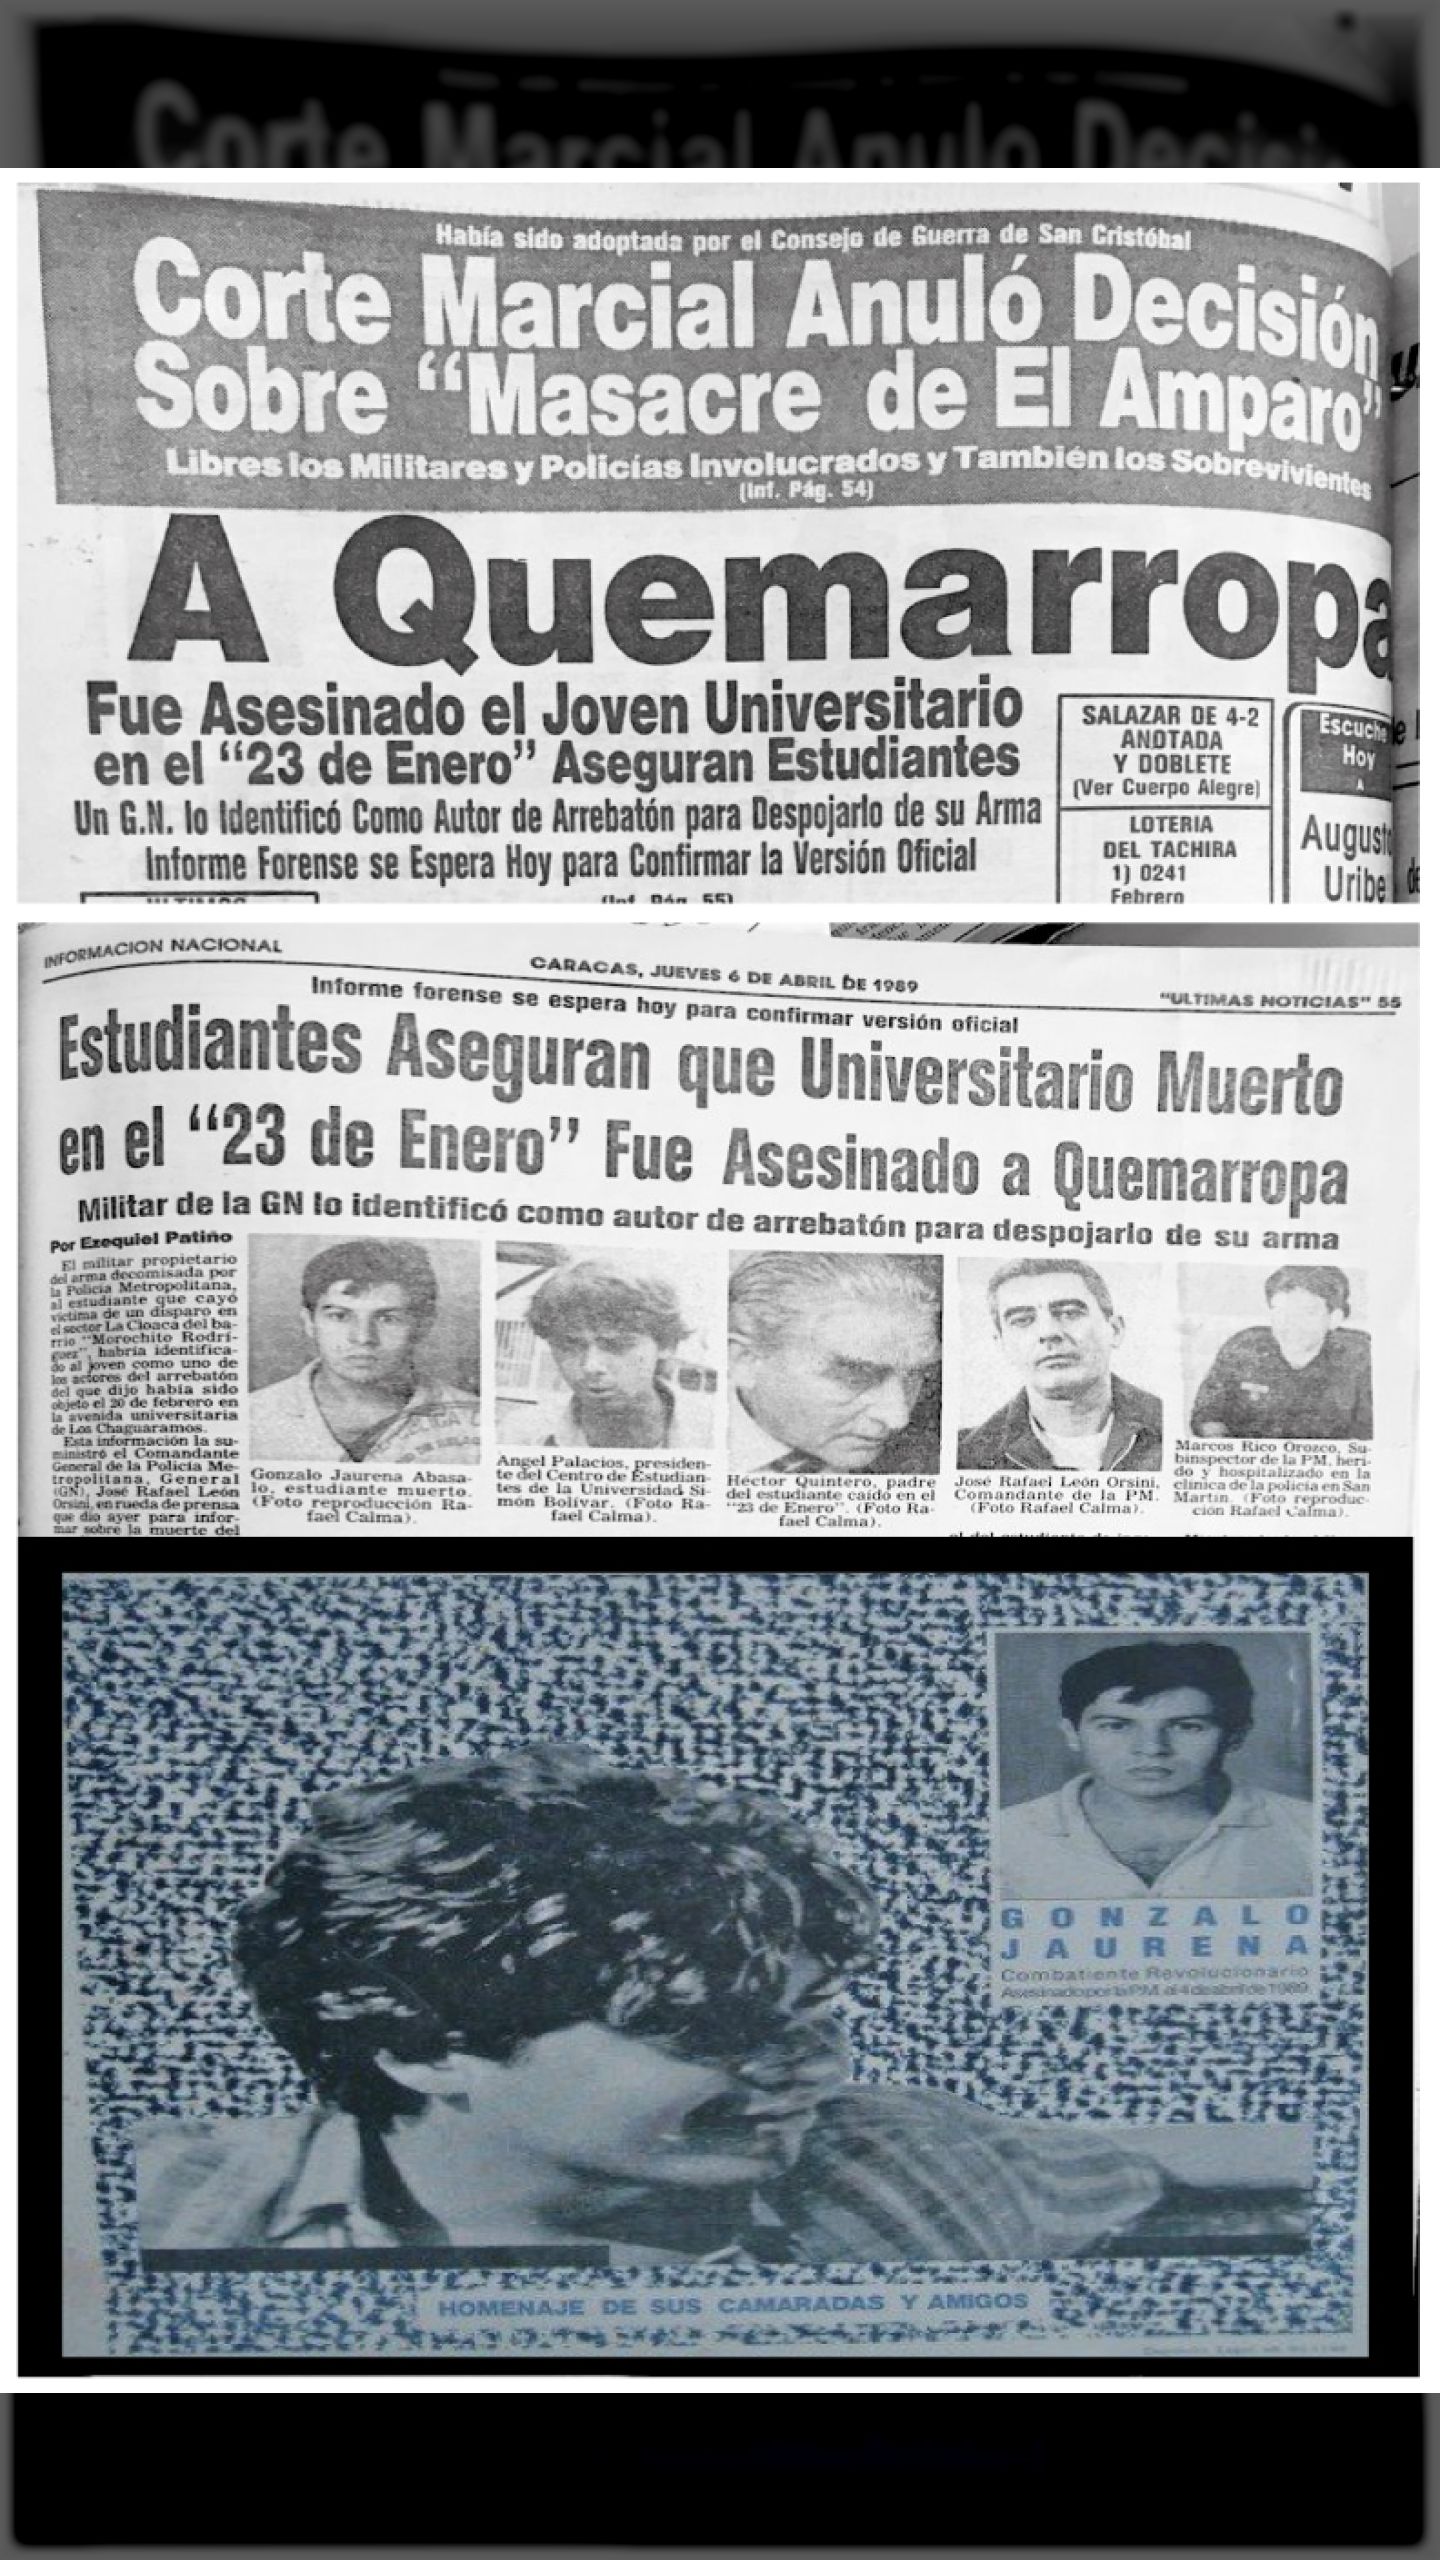 GONZÁLO JAURENA ABÁSALO FUE ASESINADO A QUEMARROPA POR LA POLICÍA METROPOLITANA (ÚLTIMAS NOTICIAS, 6 de abril 1989)